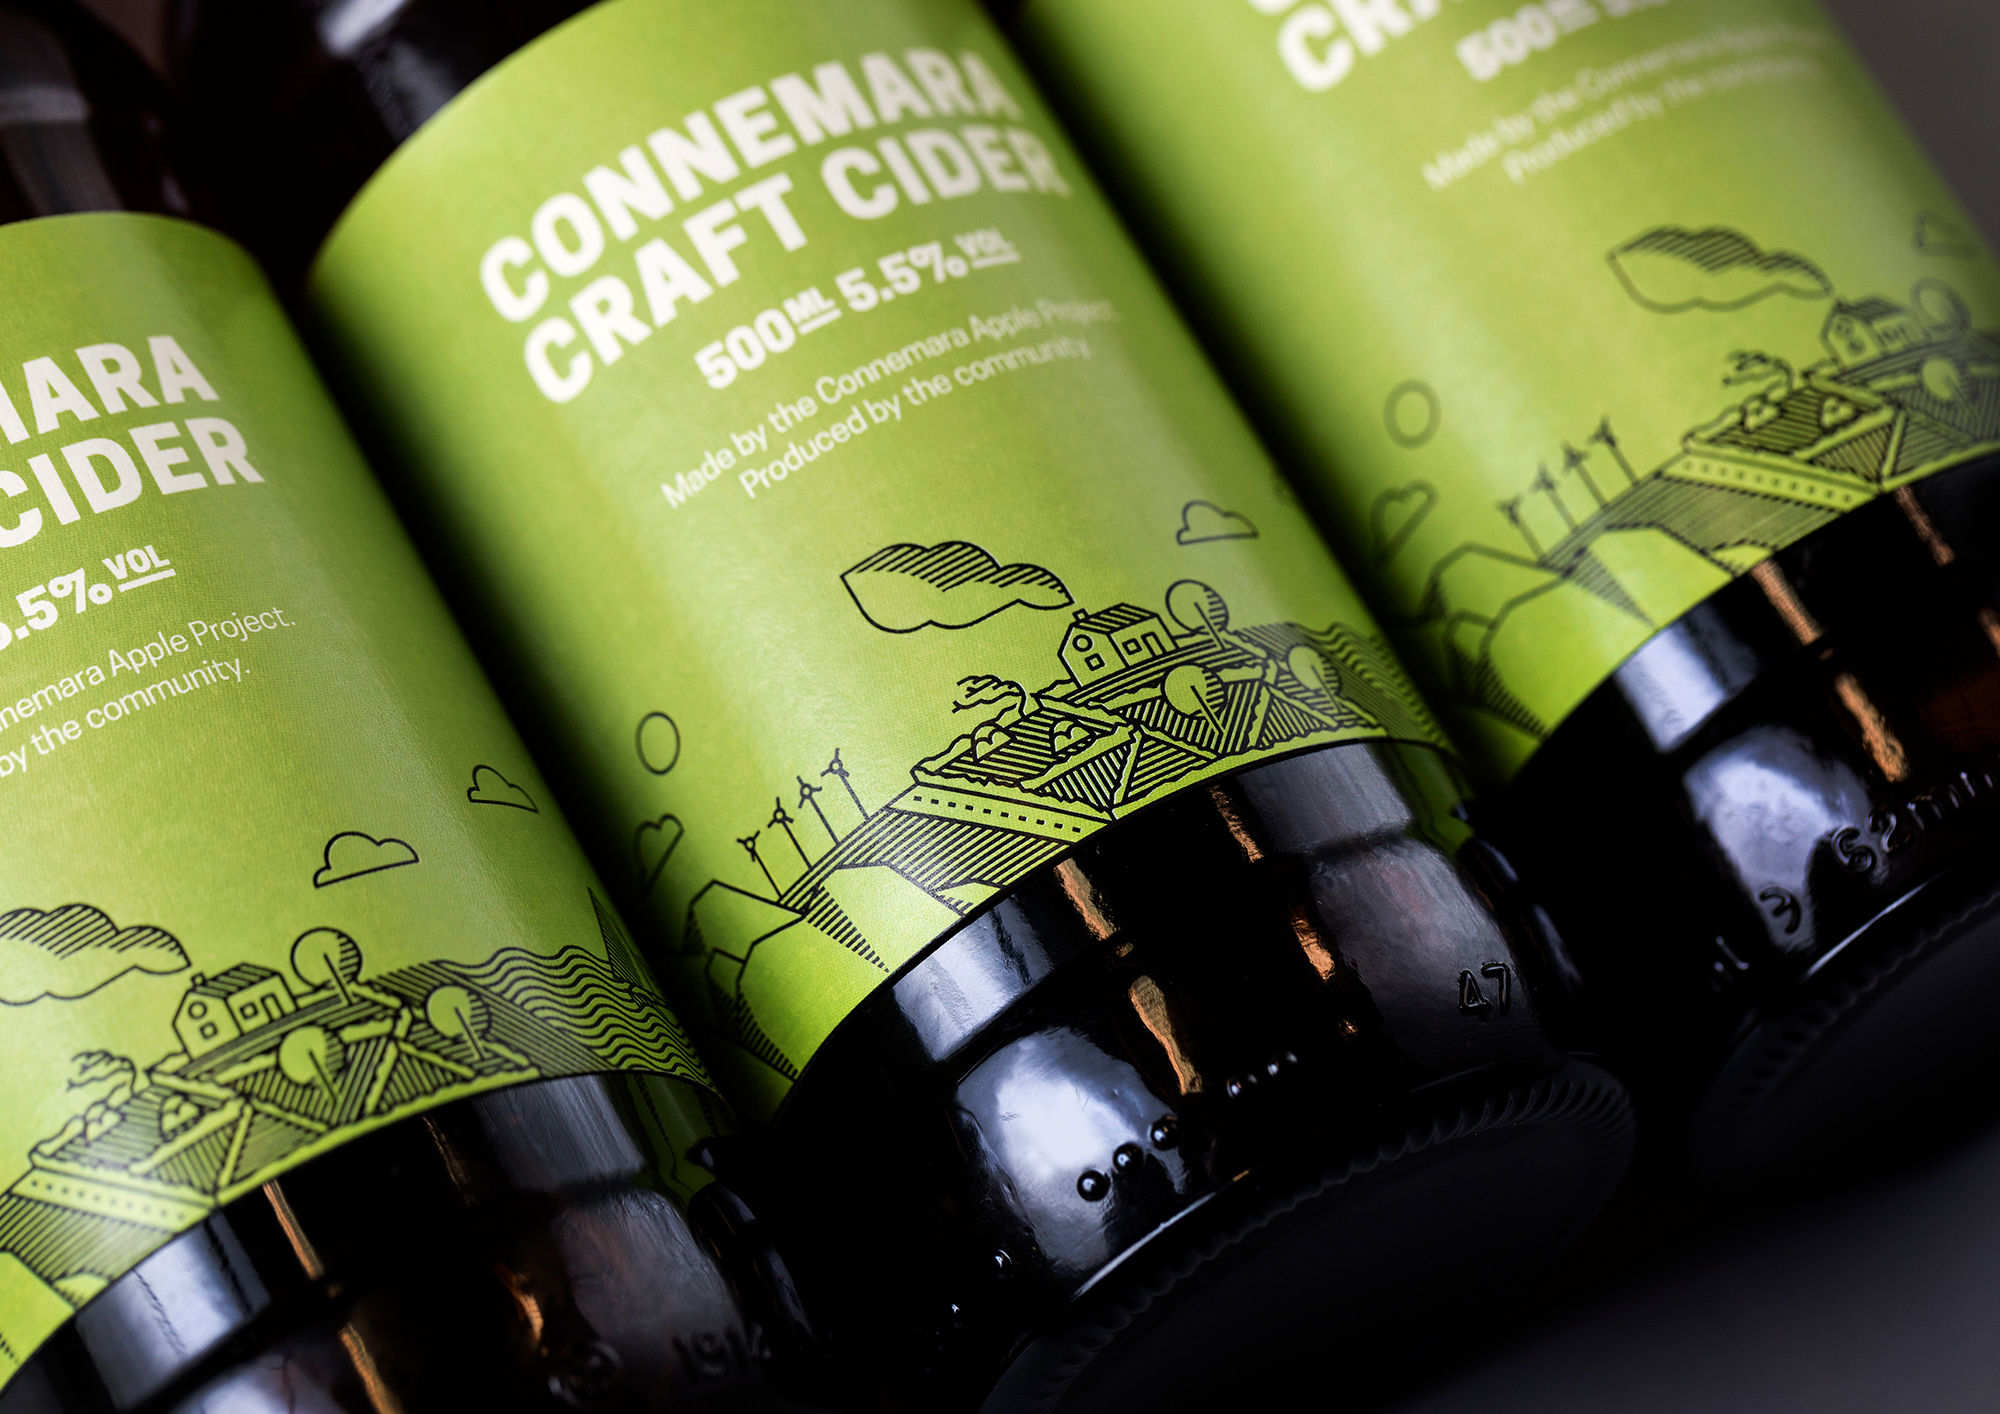 Cover image: Connemara Craft Cider